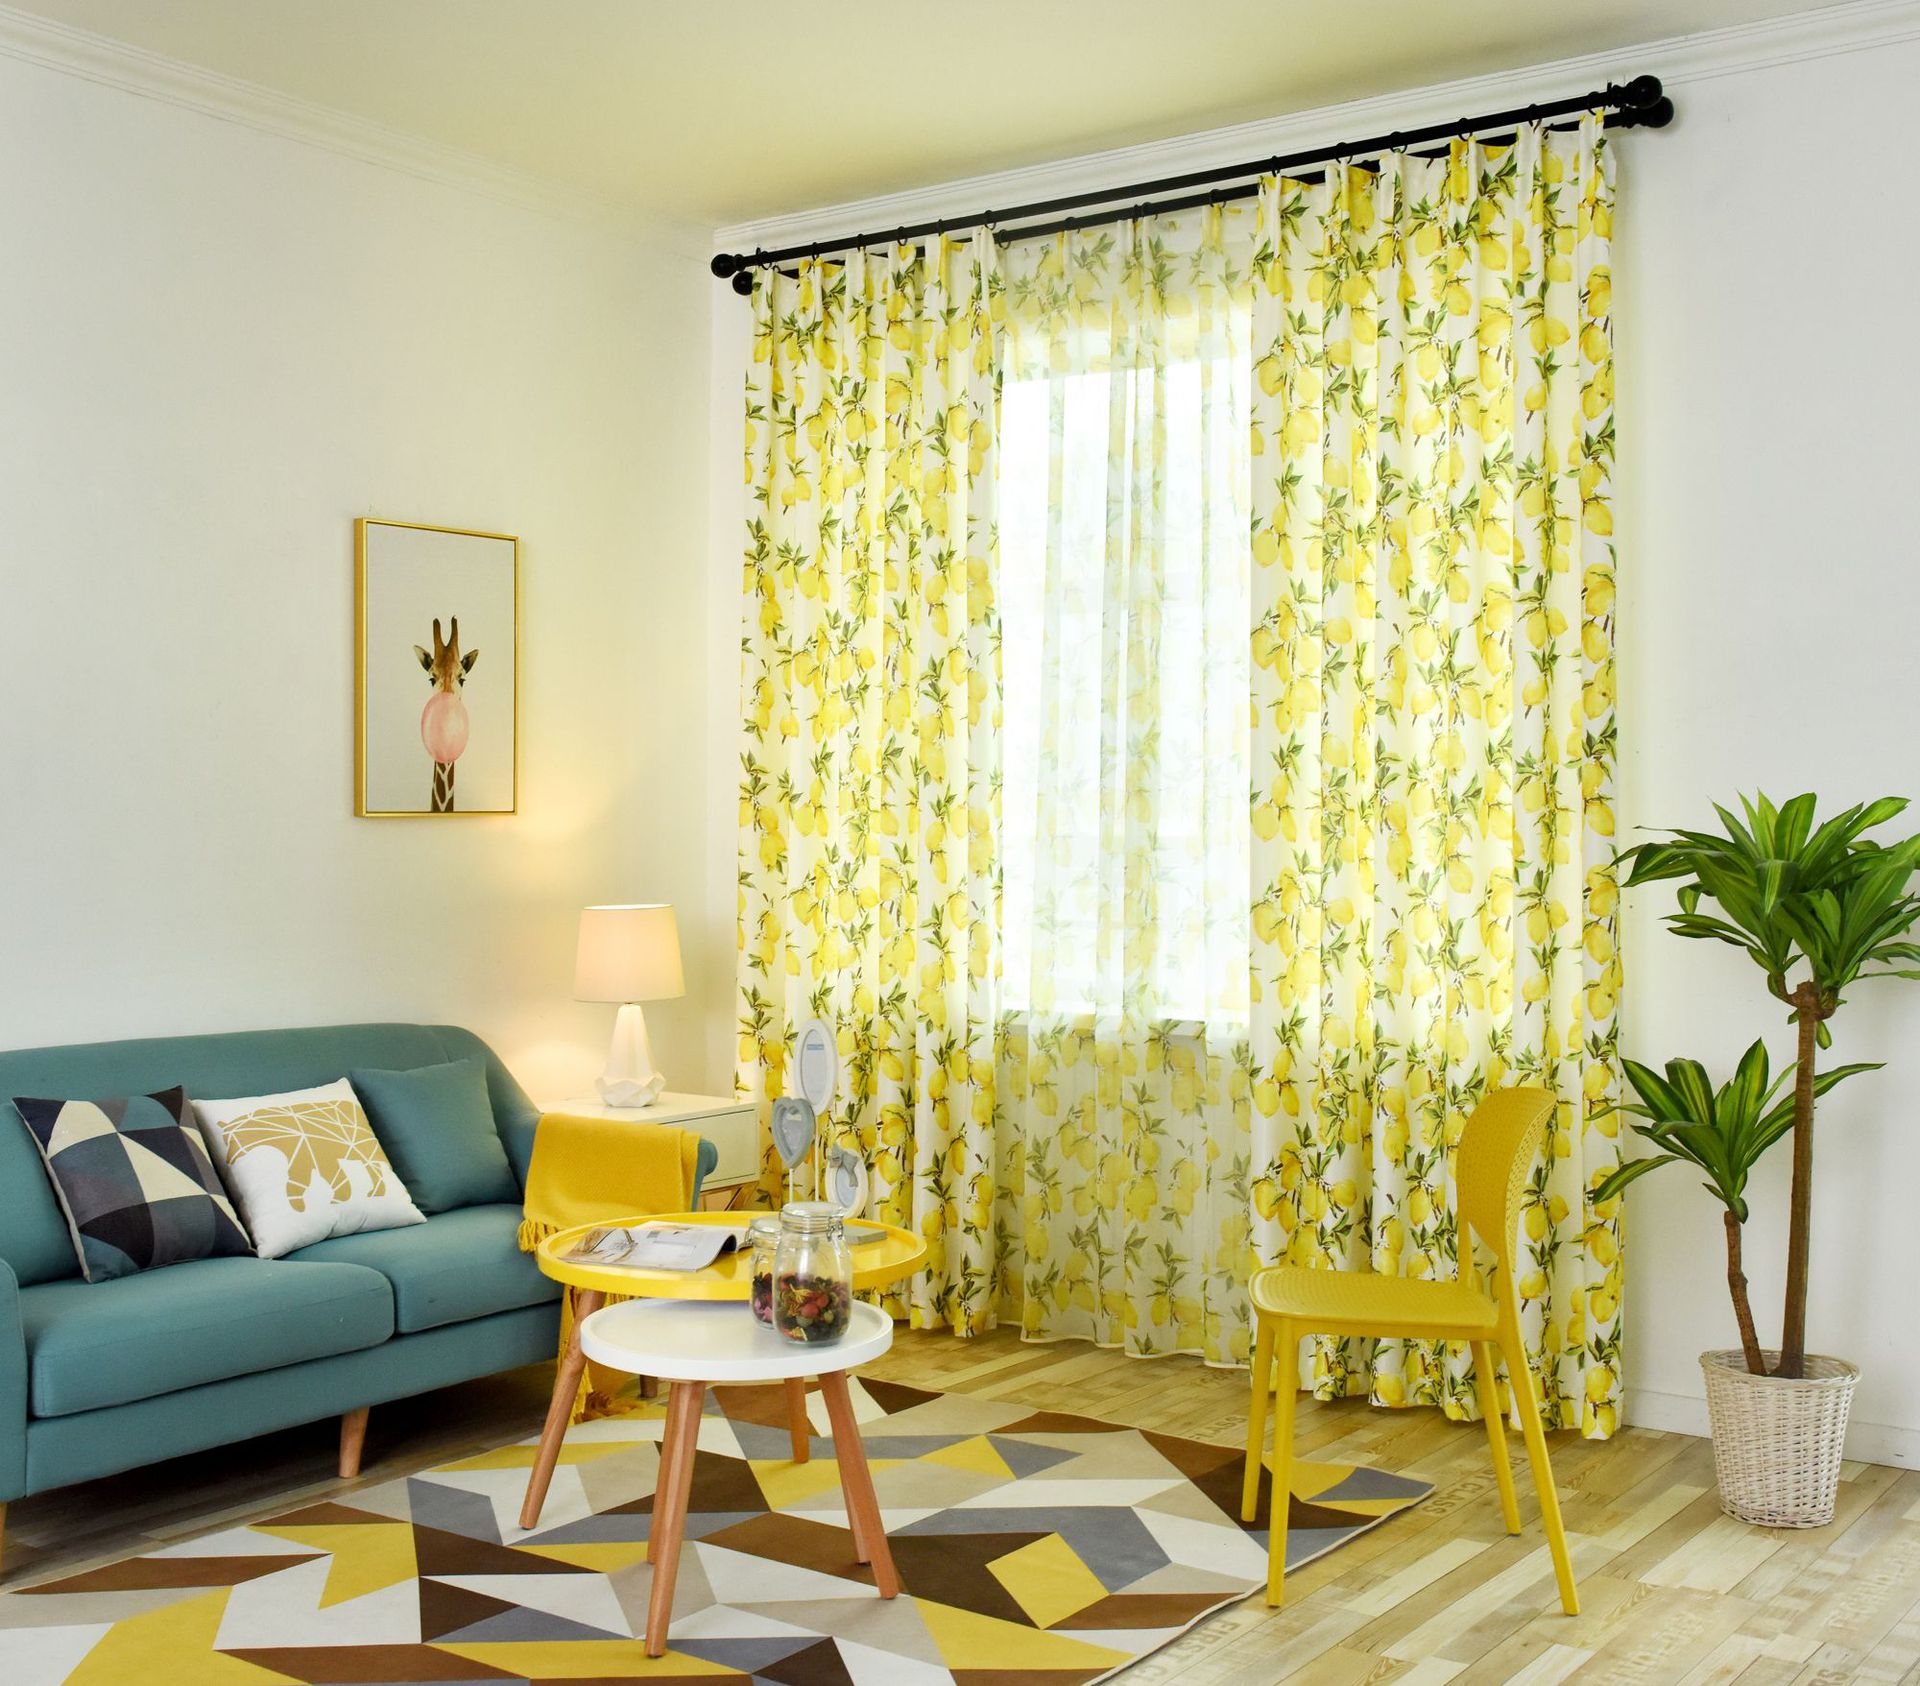 伊莎莱-中式风客厅窗帘效果图-客厅窗帘图片